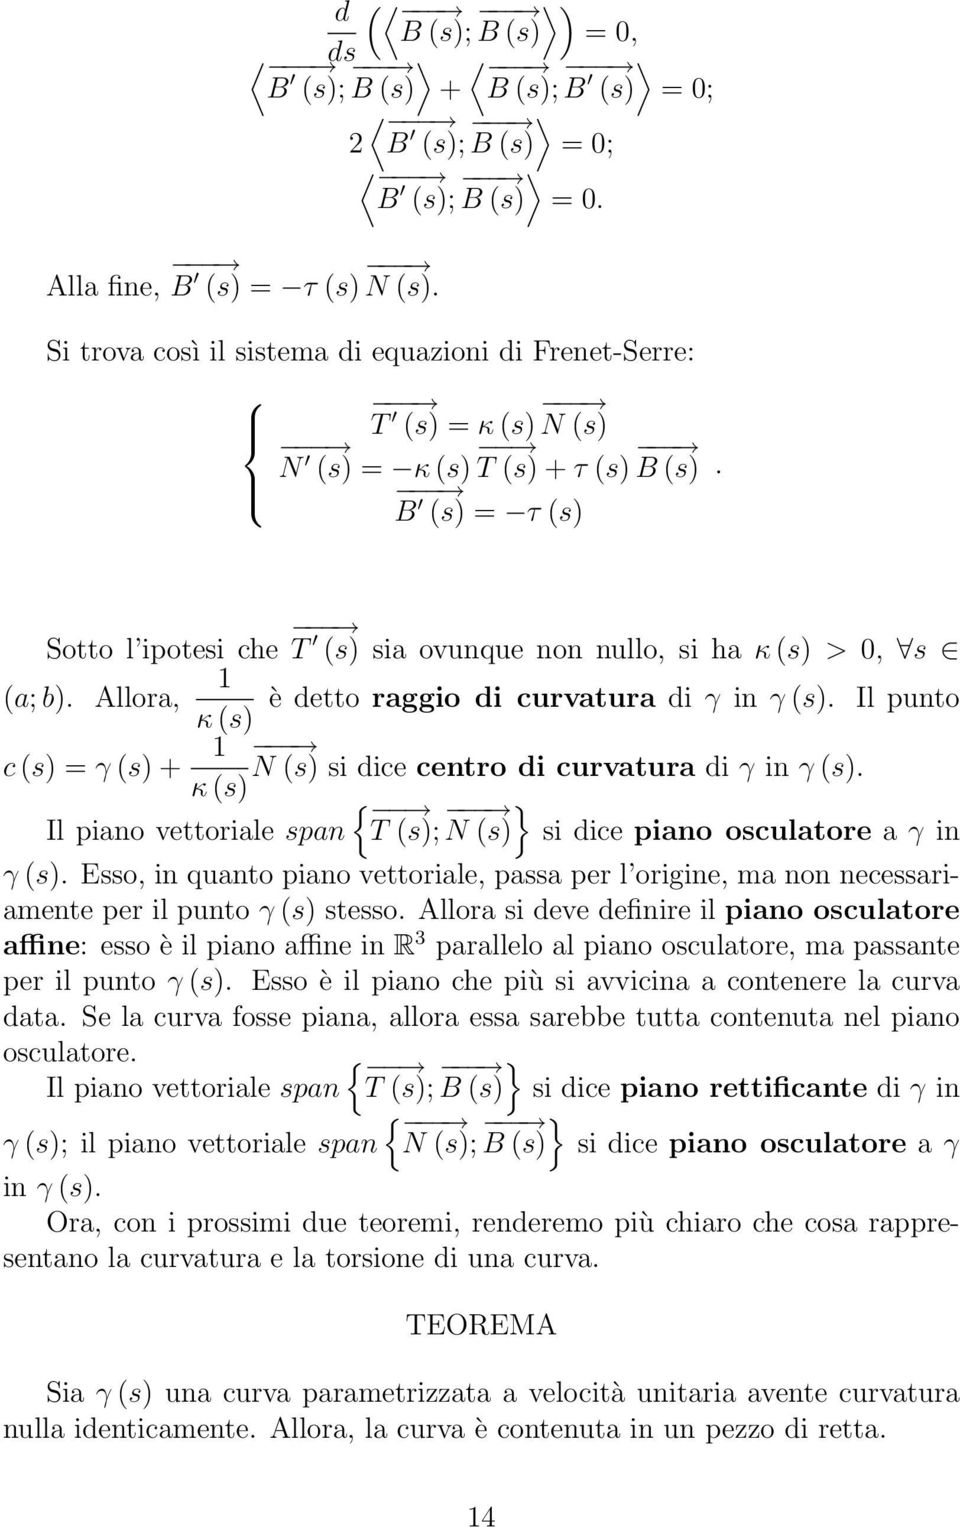 (s) + 1 N (s) si dice centro di curvatura di γ in γ (s) κ (s) { Il piano vettoriale span T (s); } N (s) si dice piano osculatore a γ in γ (s) Esso, in quanto piano vettoriale, passa per l origine, ma